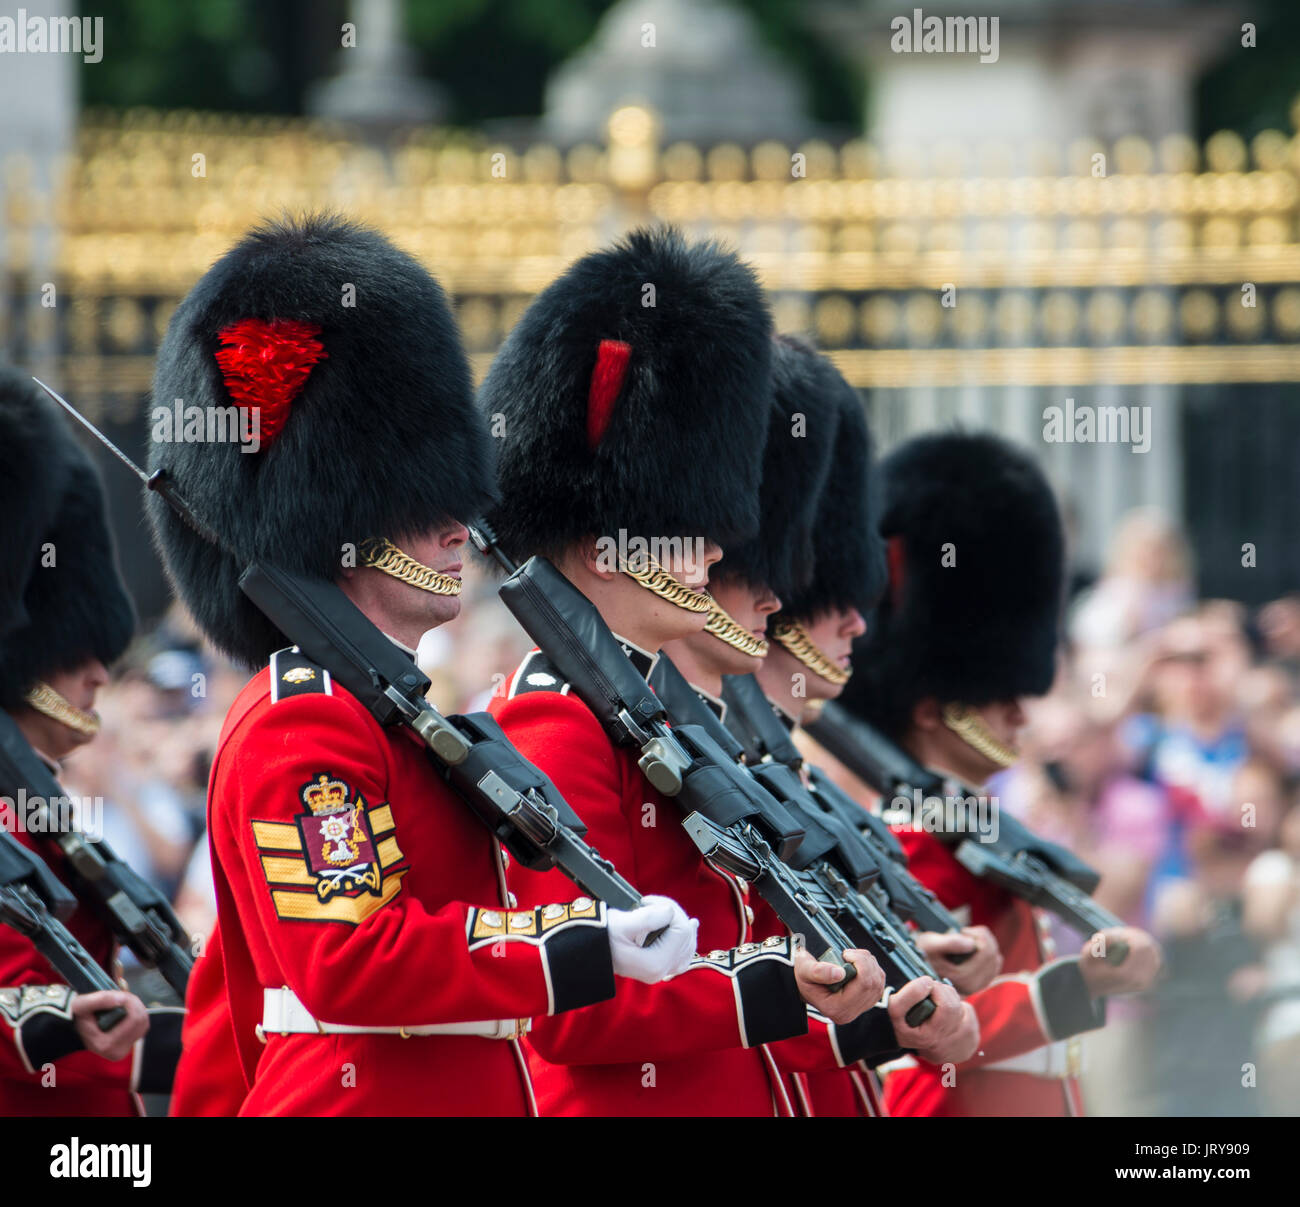 Les tuteurs de la Garde royale avec des armes, Garde royale, la relève de la garde, Londres, Angleterre, Royaume-Uni Banque D'Images